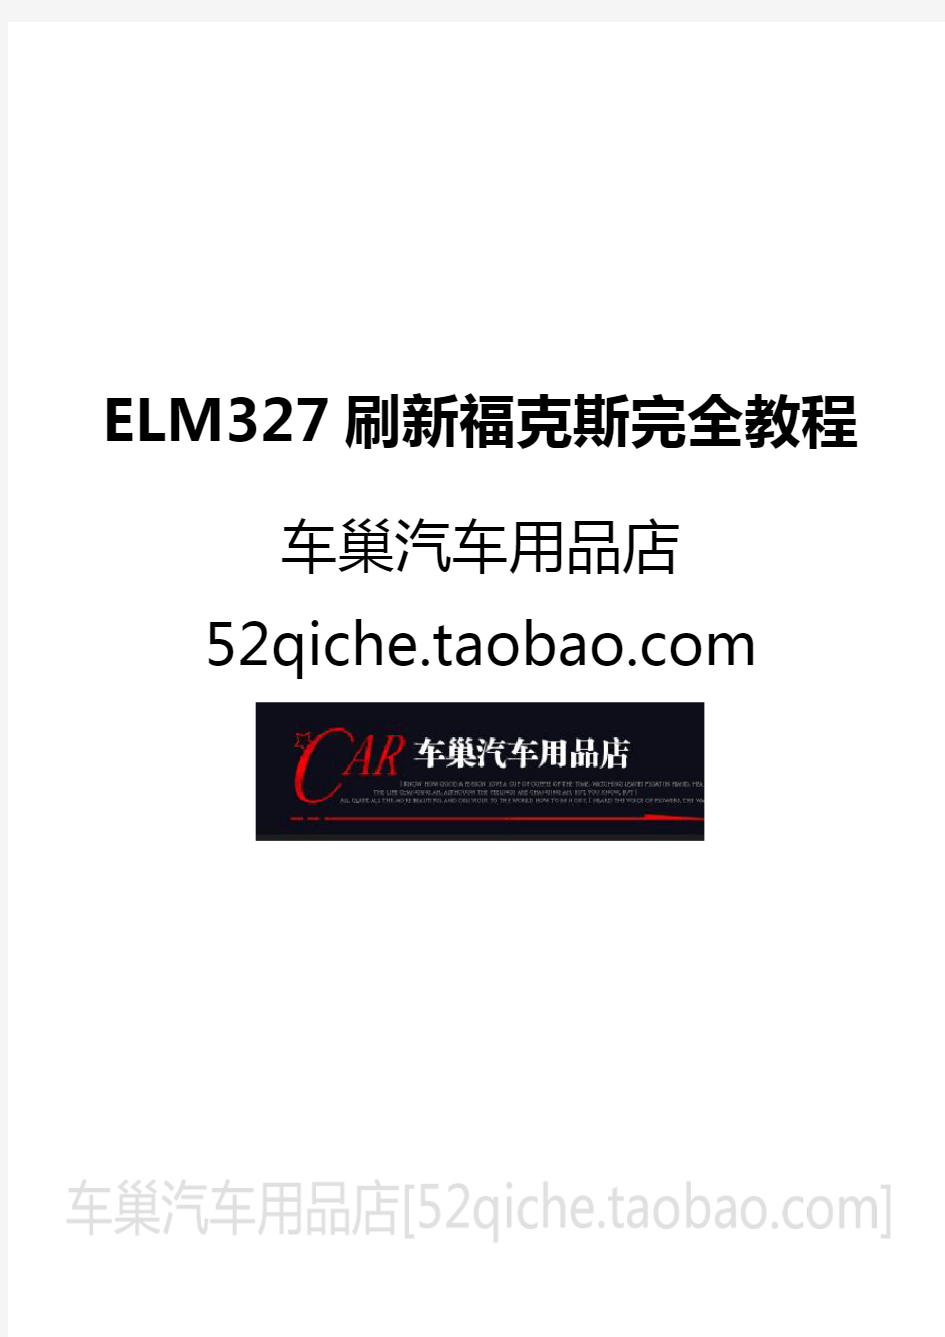 新福克斯elm327刷隐藏功能教程